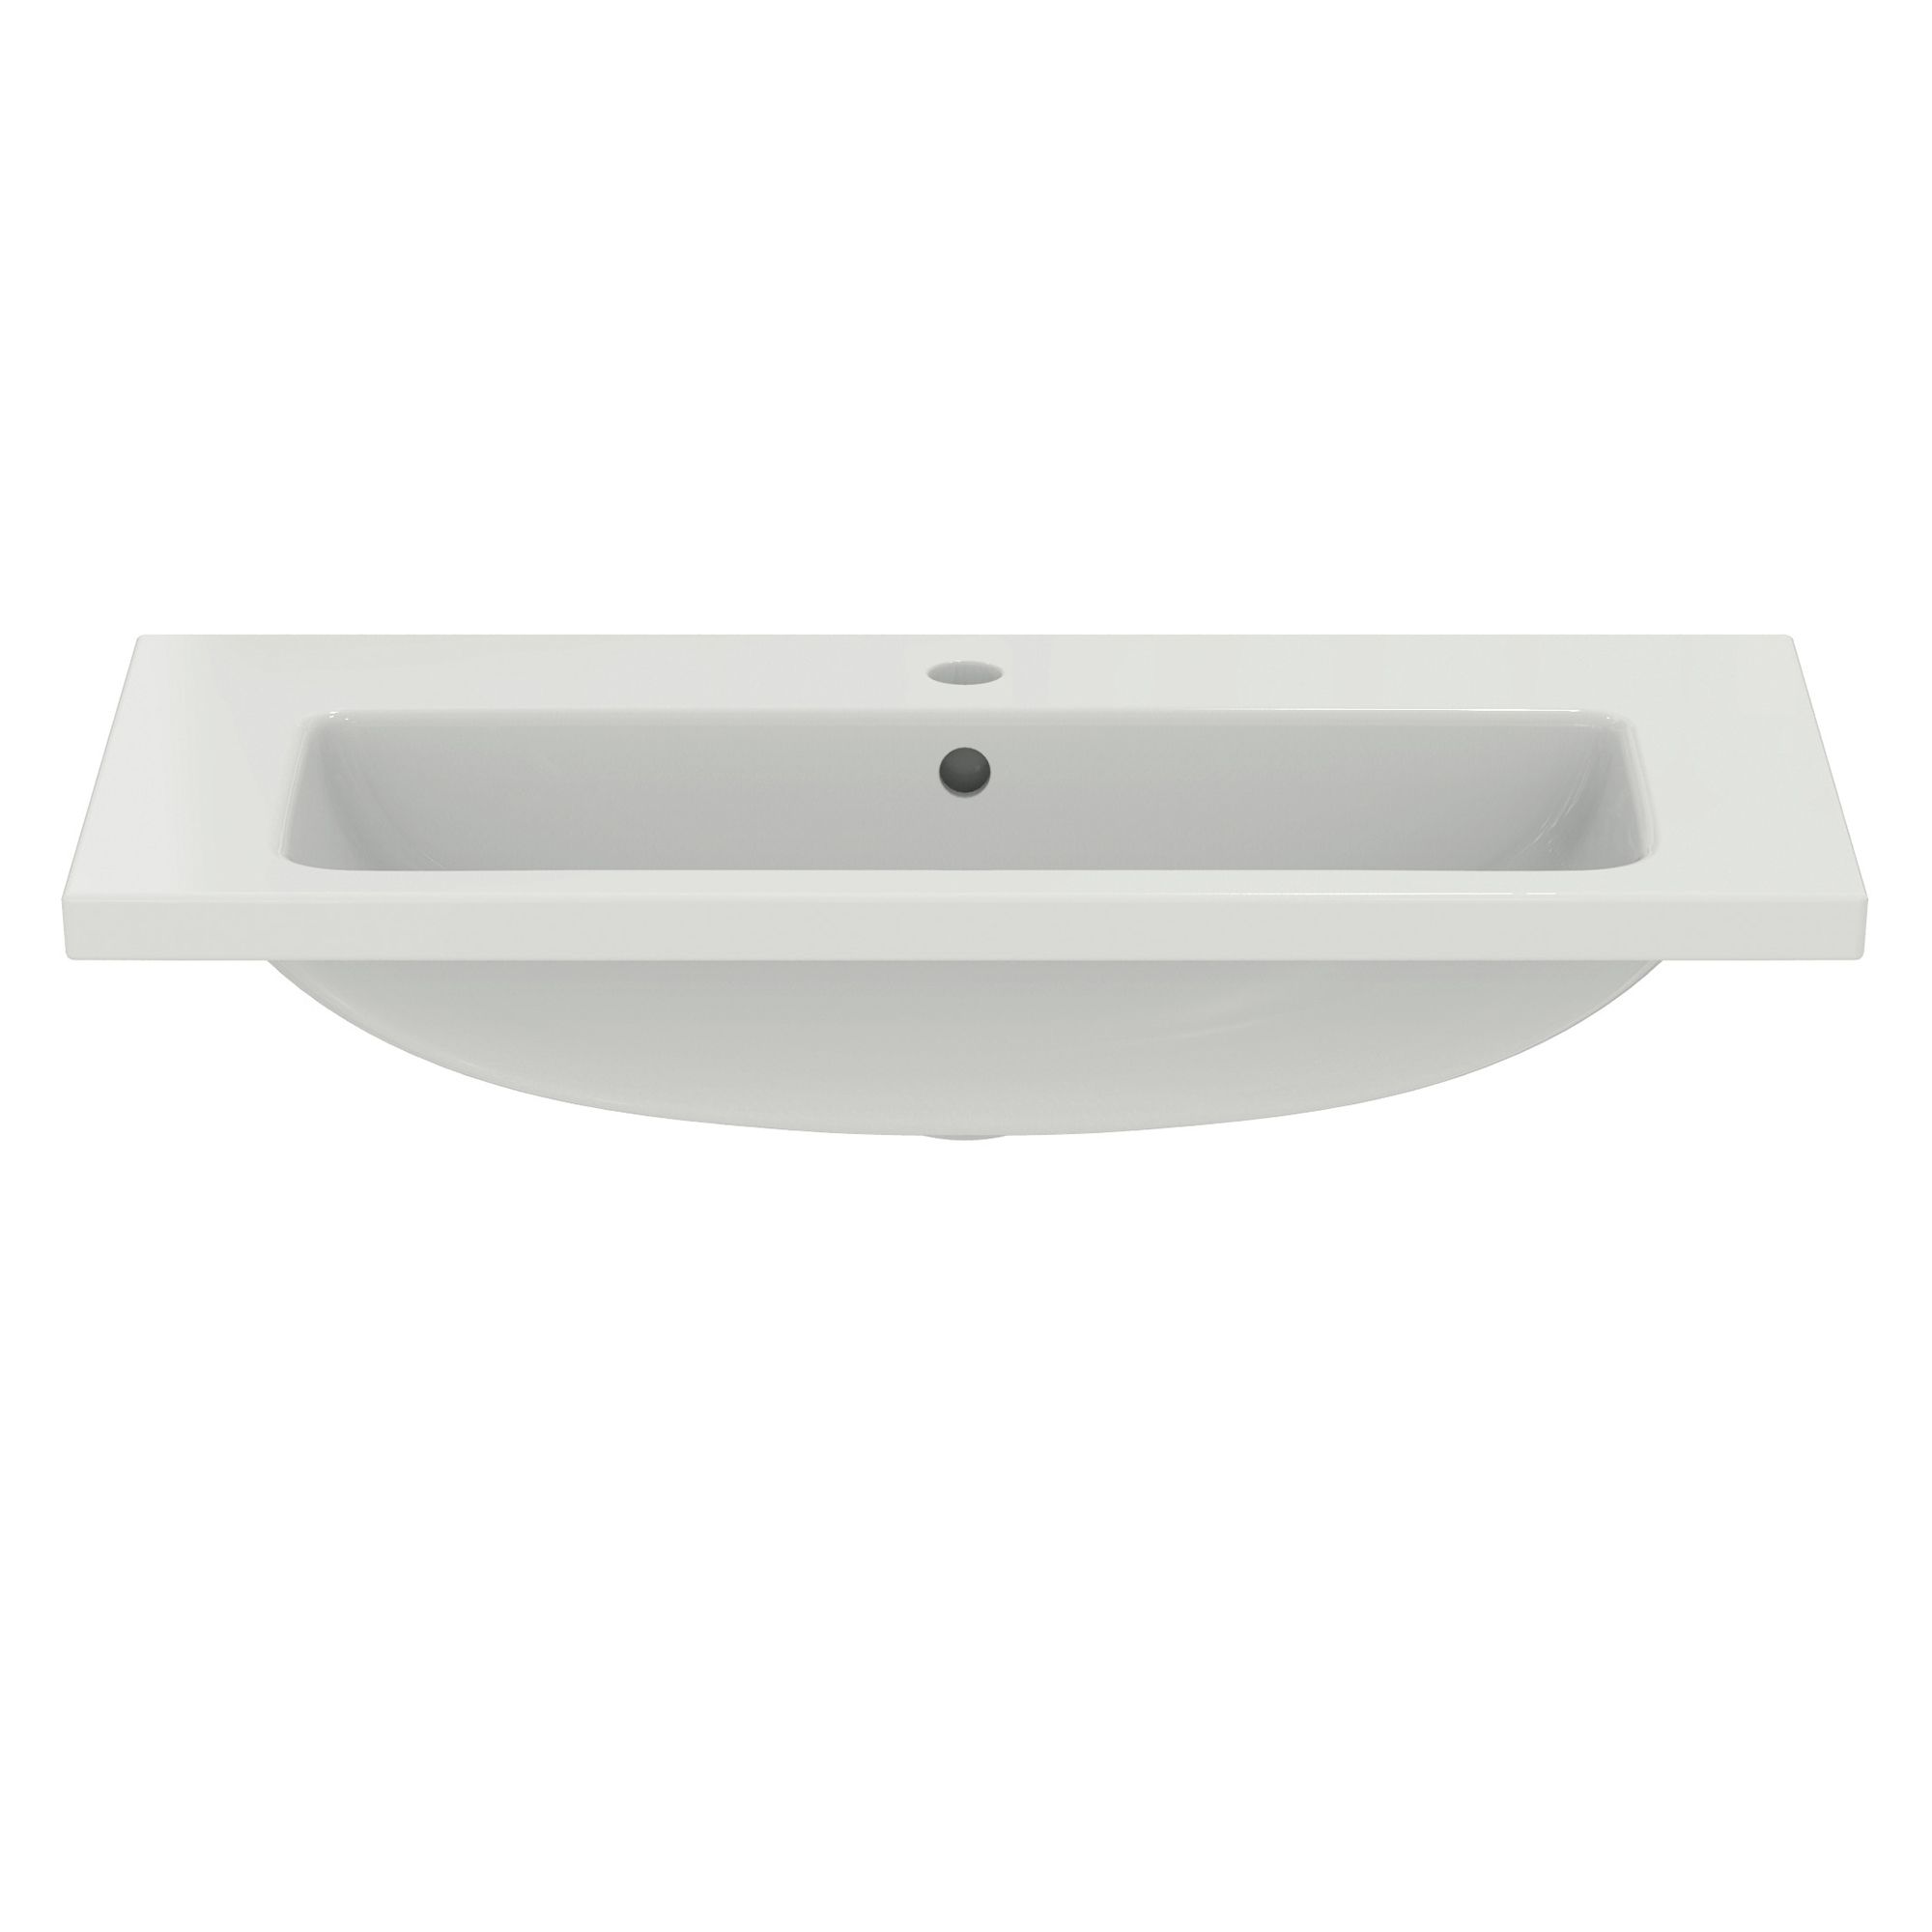 Ideal Standard i.life S Gloss White Rectangular Vanity Basin (W)80cm